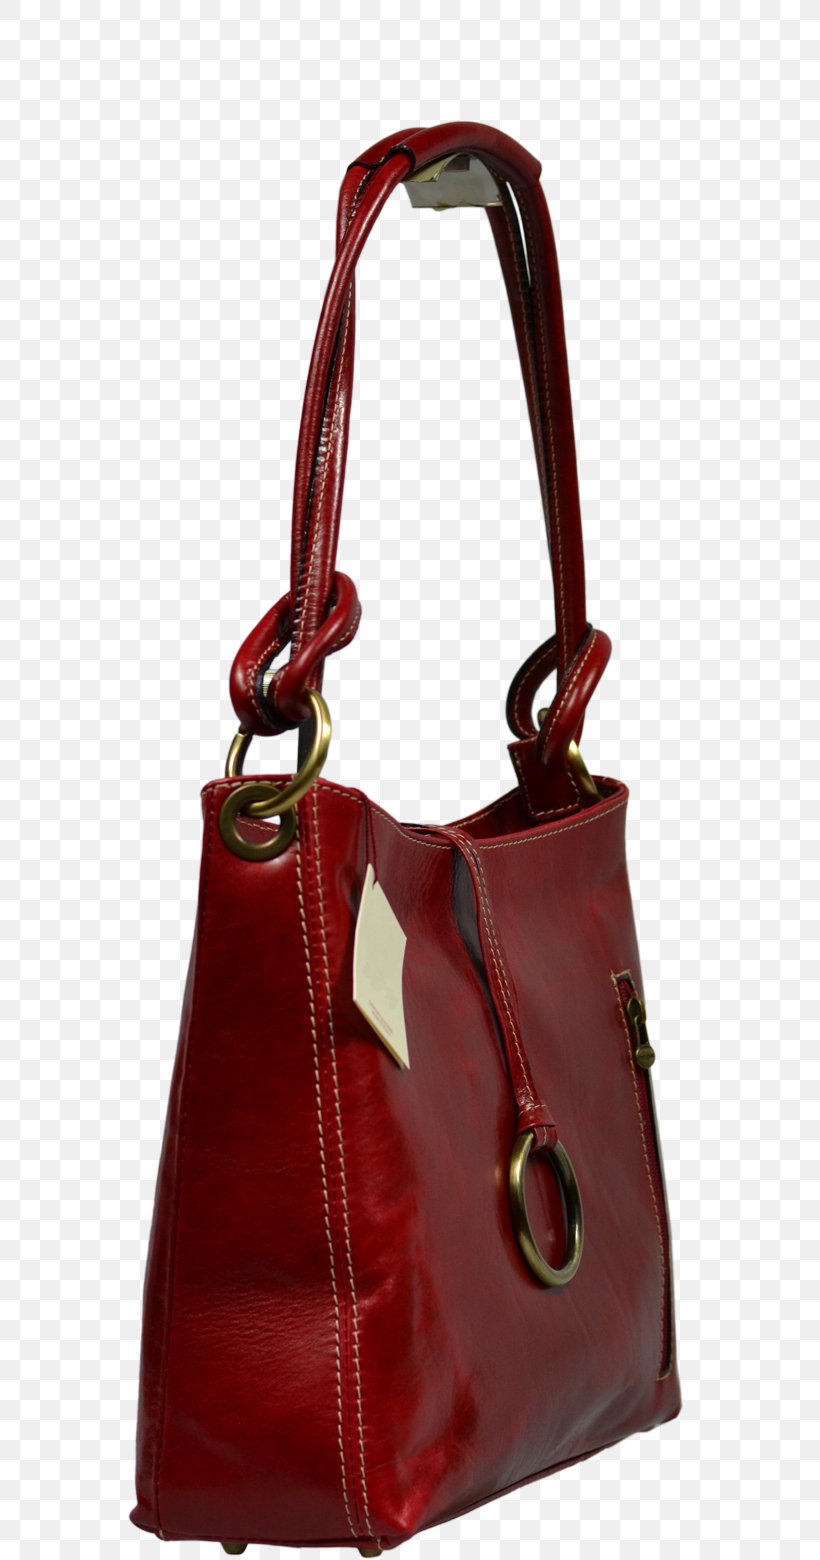 Tote Bag Hobo Bag Handbag Leather Messenger Bags, PNG, 800x1560px, Tote Bag, Bag, Brown, Fashion Accessory, Handbag Download Free